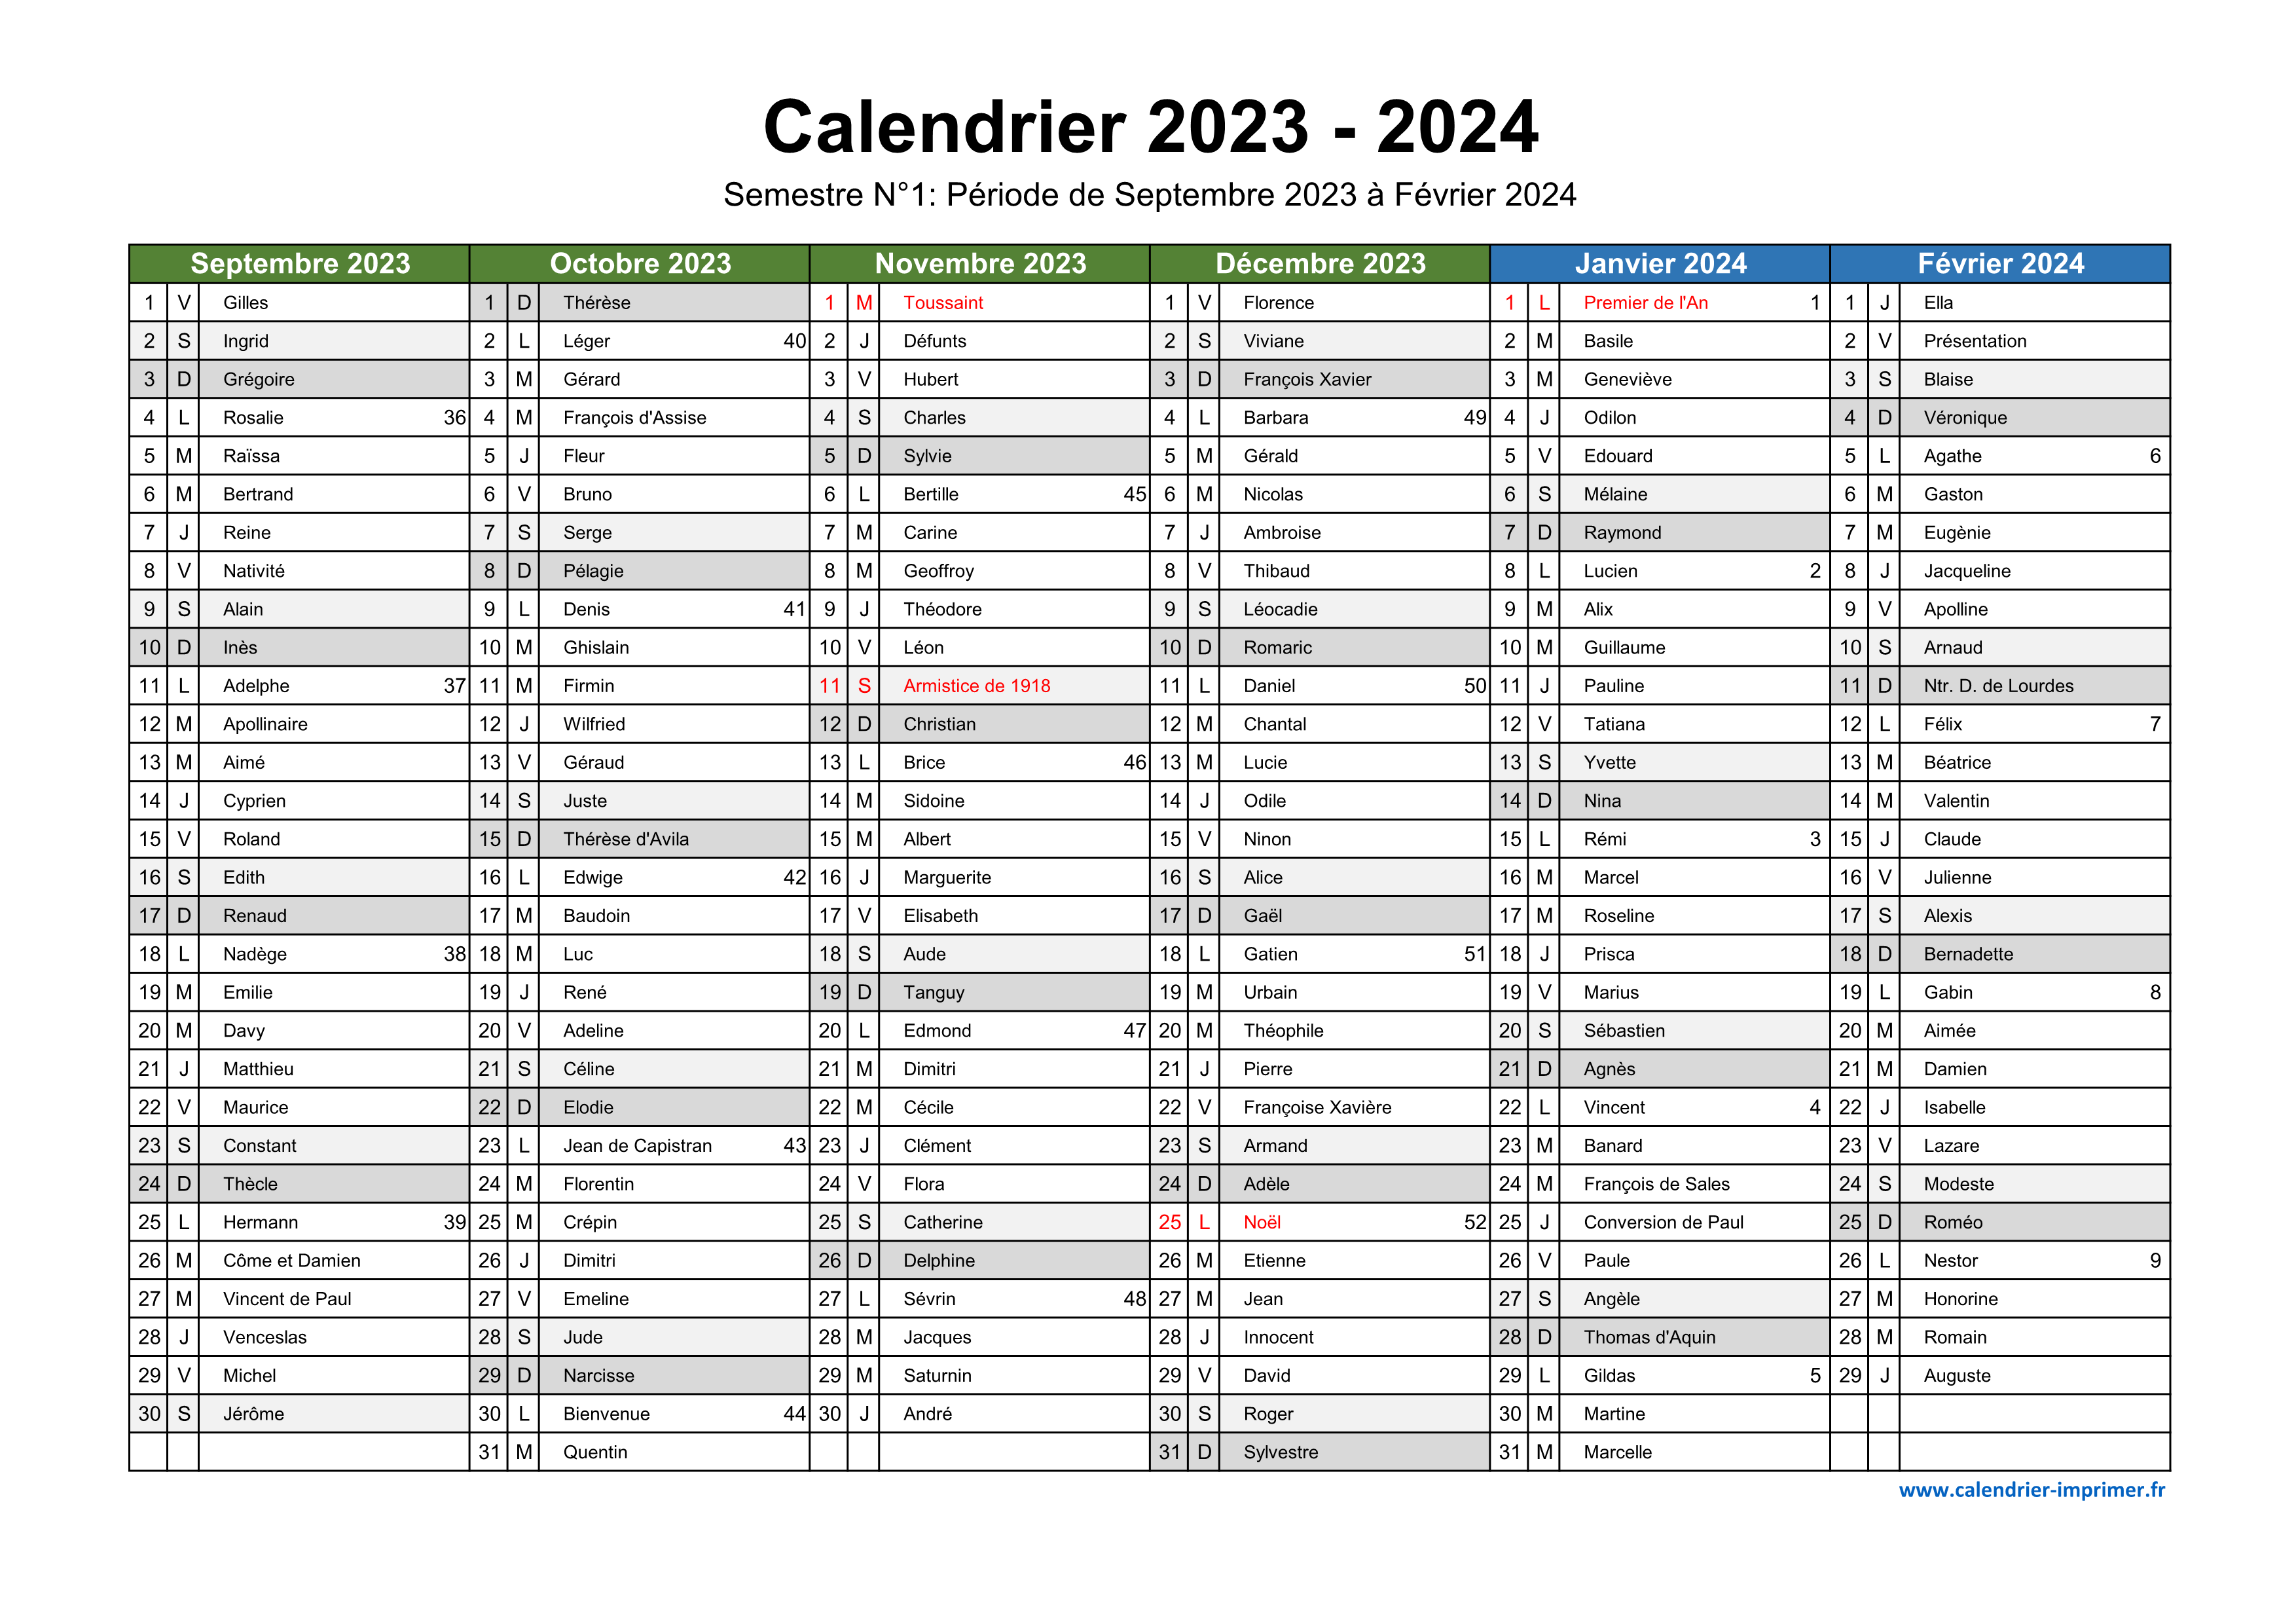 Calendrier 2023-2024 (gratuit, à imprimer)